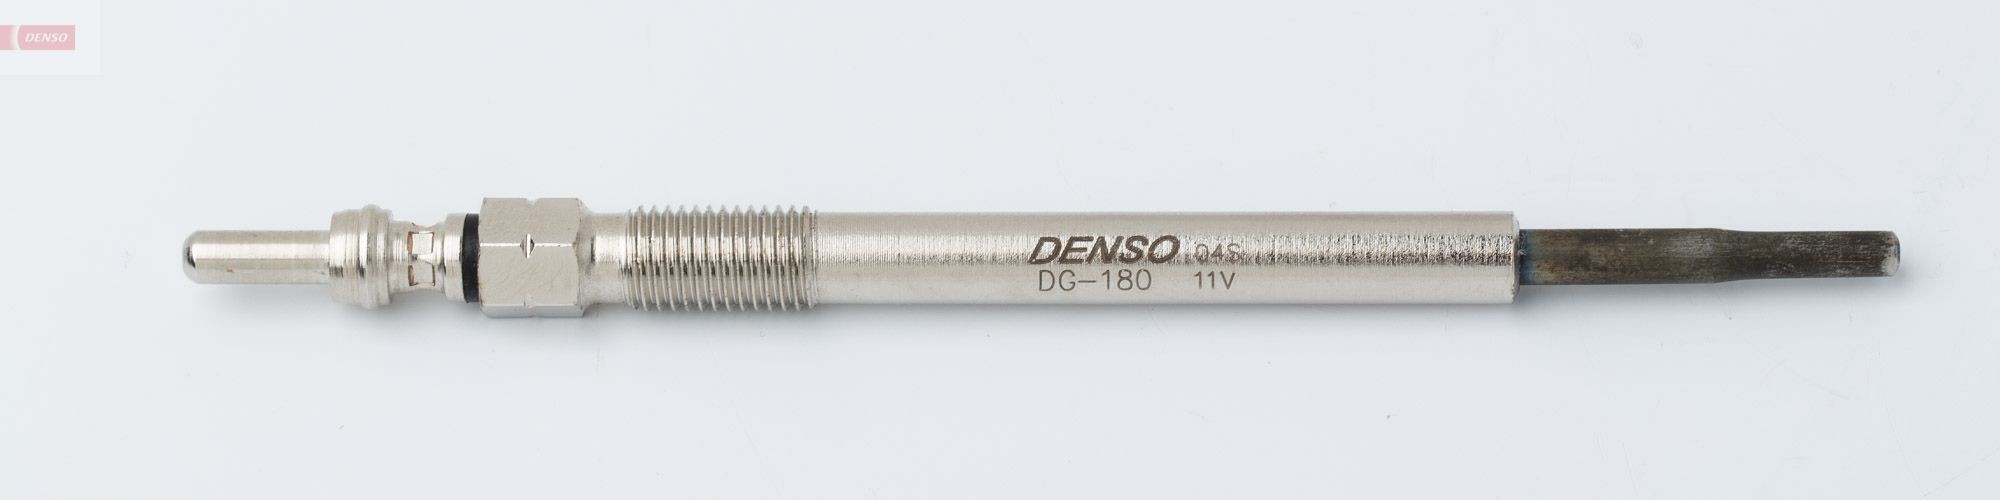 DG-180 DENSO Glow plug VOLVO 11V M8x1.0, 124,1 mm, 8 Nm